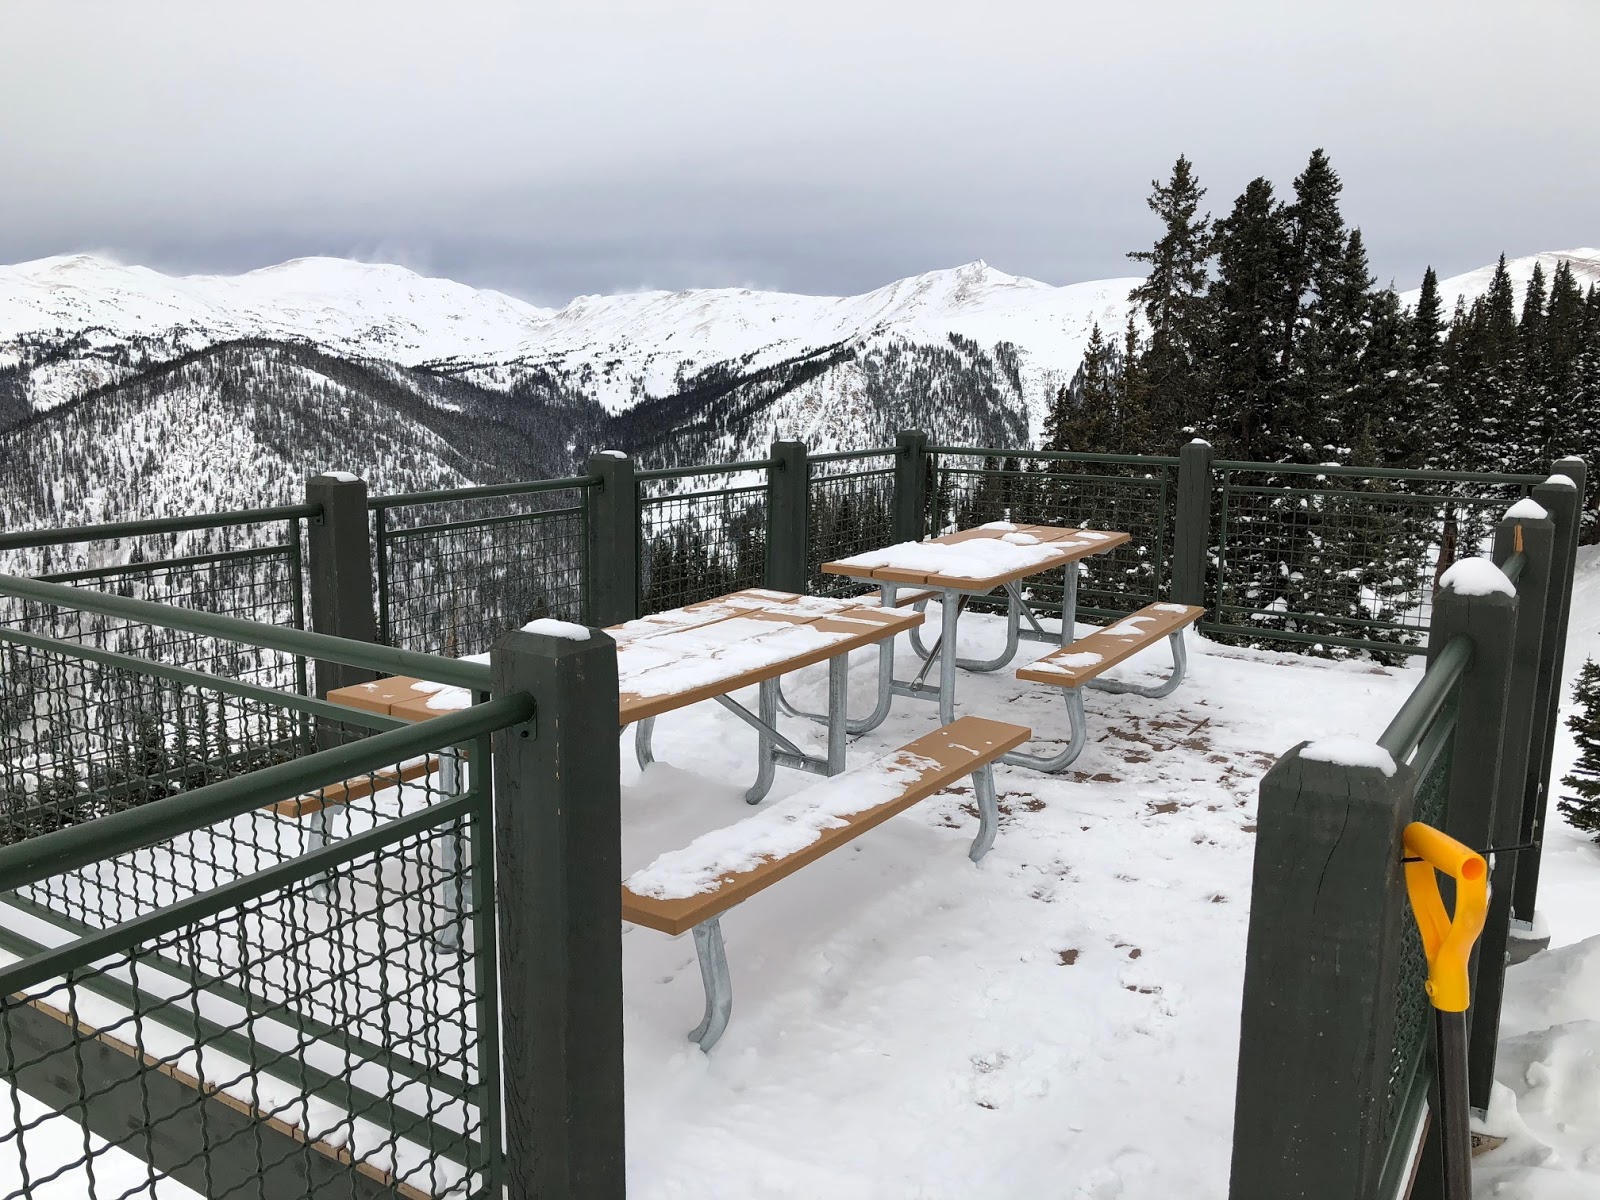 Al's Blog: Skiing Marmot